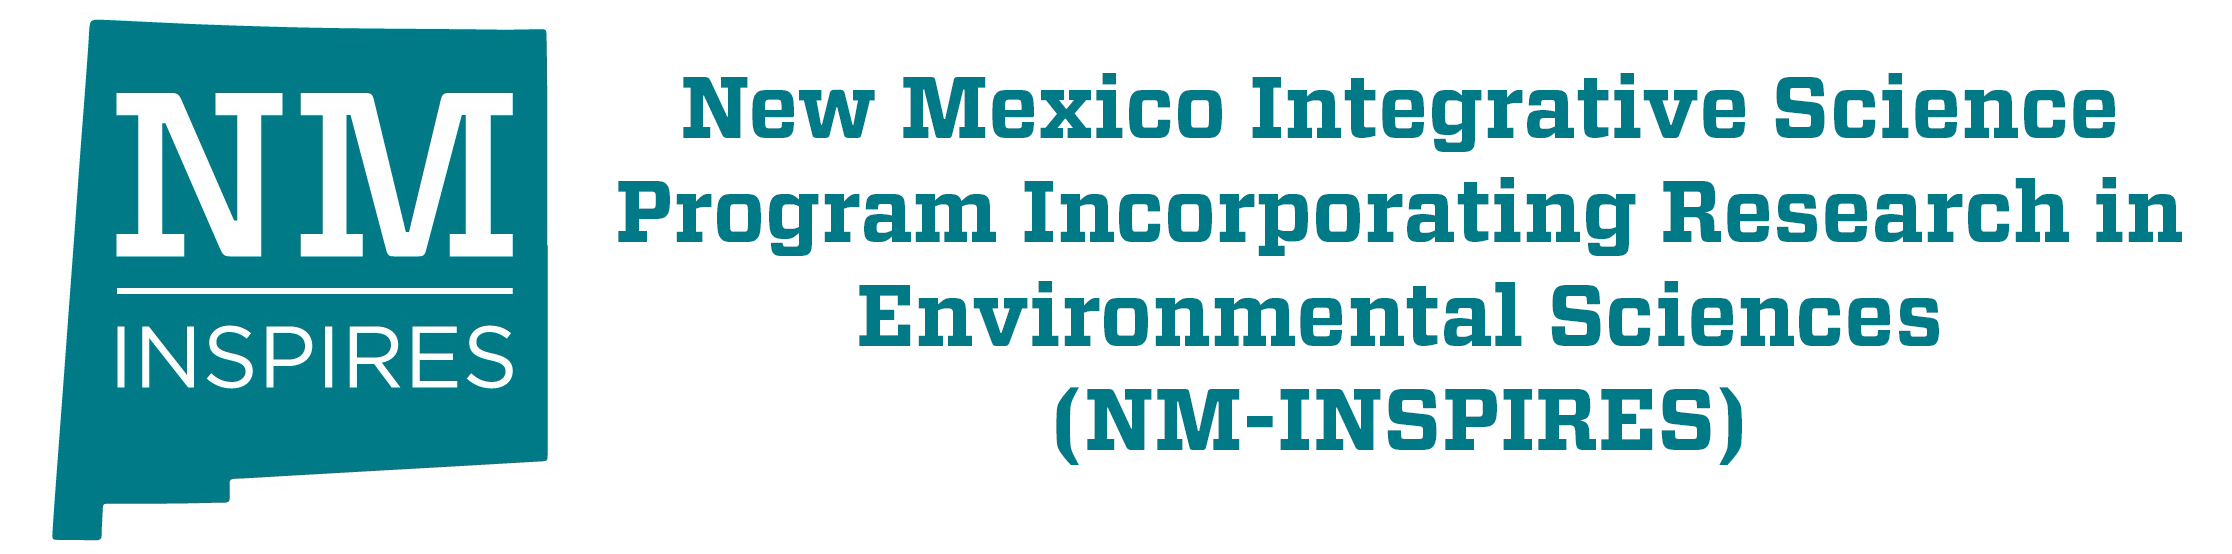 Programma scientifico integrativo del New Mexico che incorpora la ricerca nelle scienze ambientali (NM-INSPIRES)